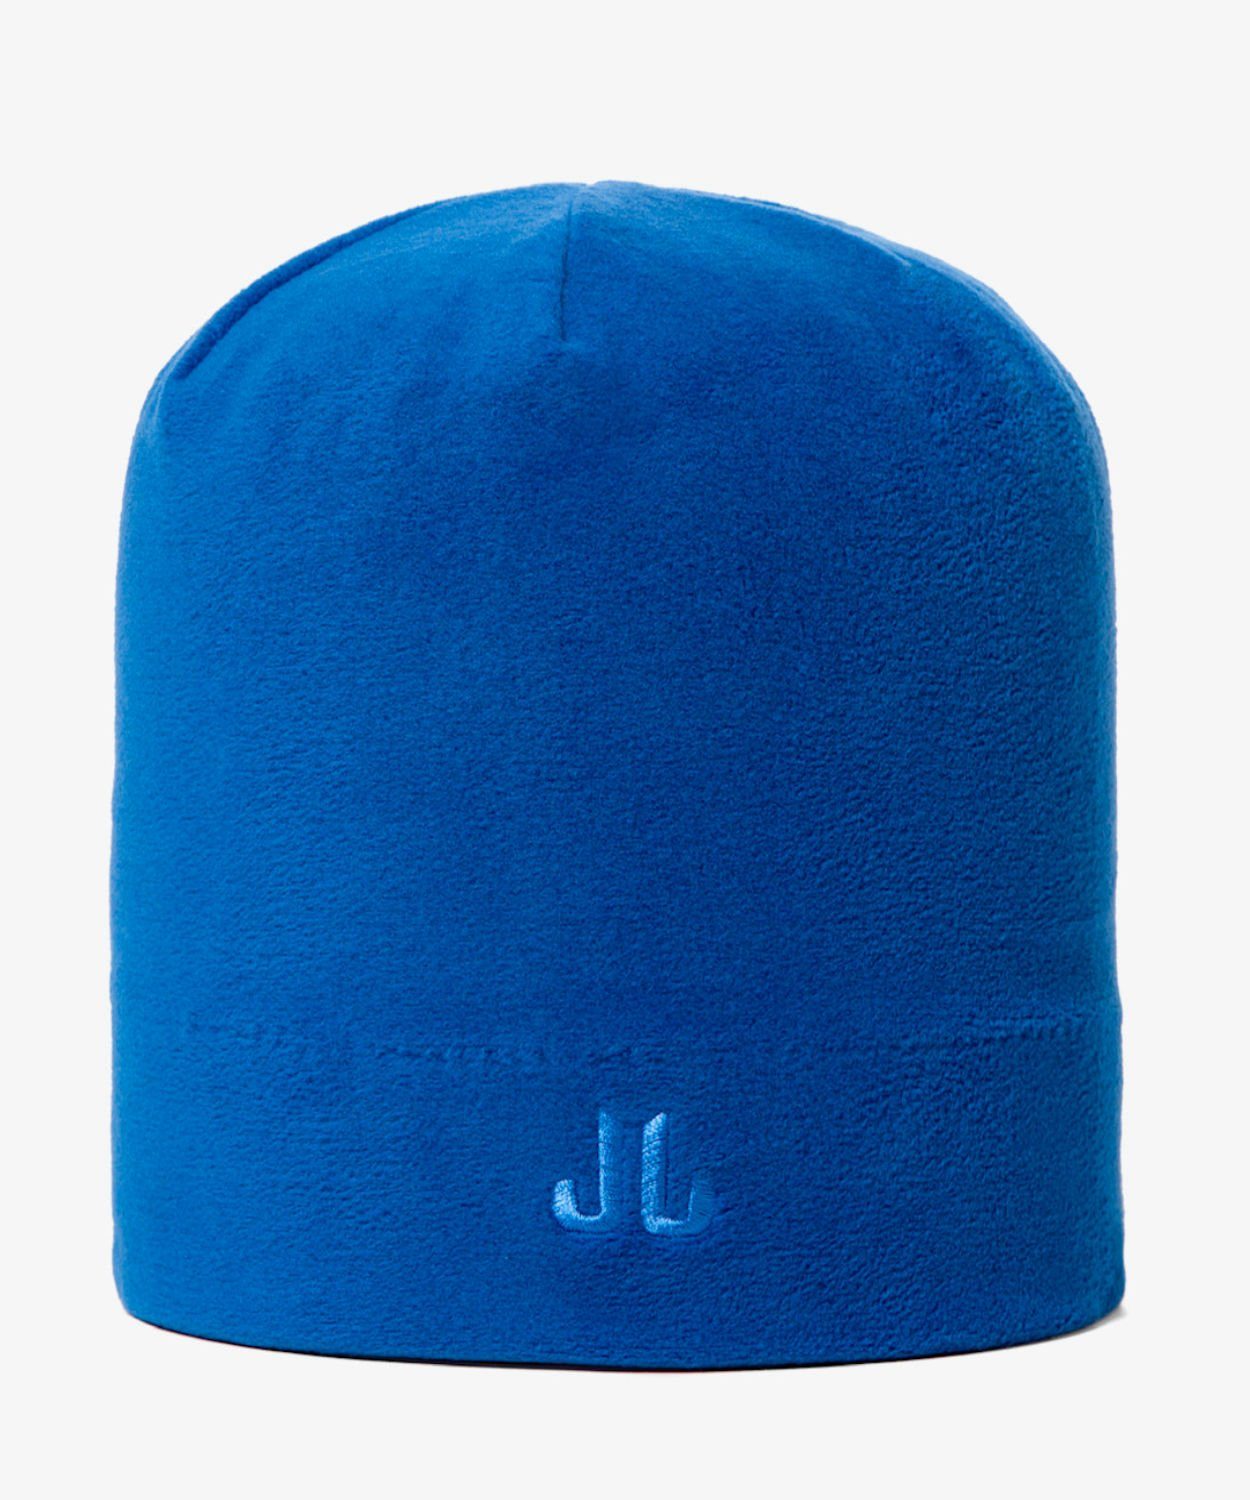 Unisex aus Jail Strickmütze Royal Microfleece, Jam Bund Blue doppellagiger Mütze